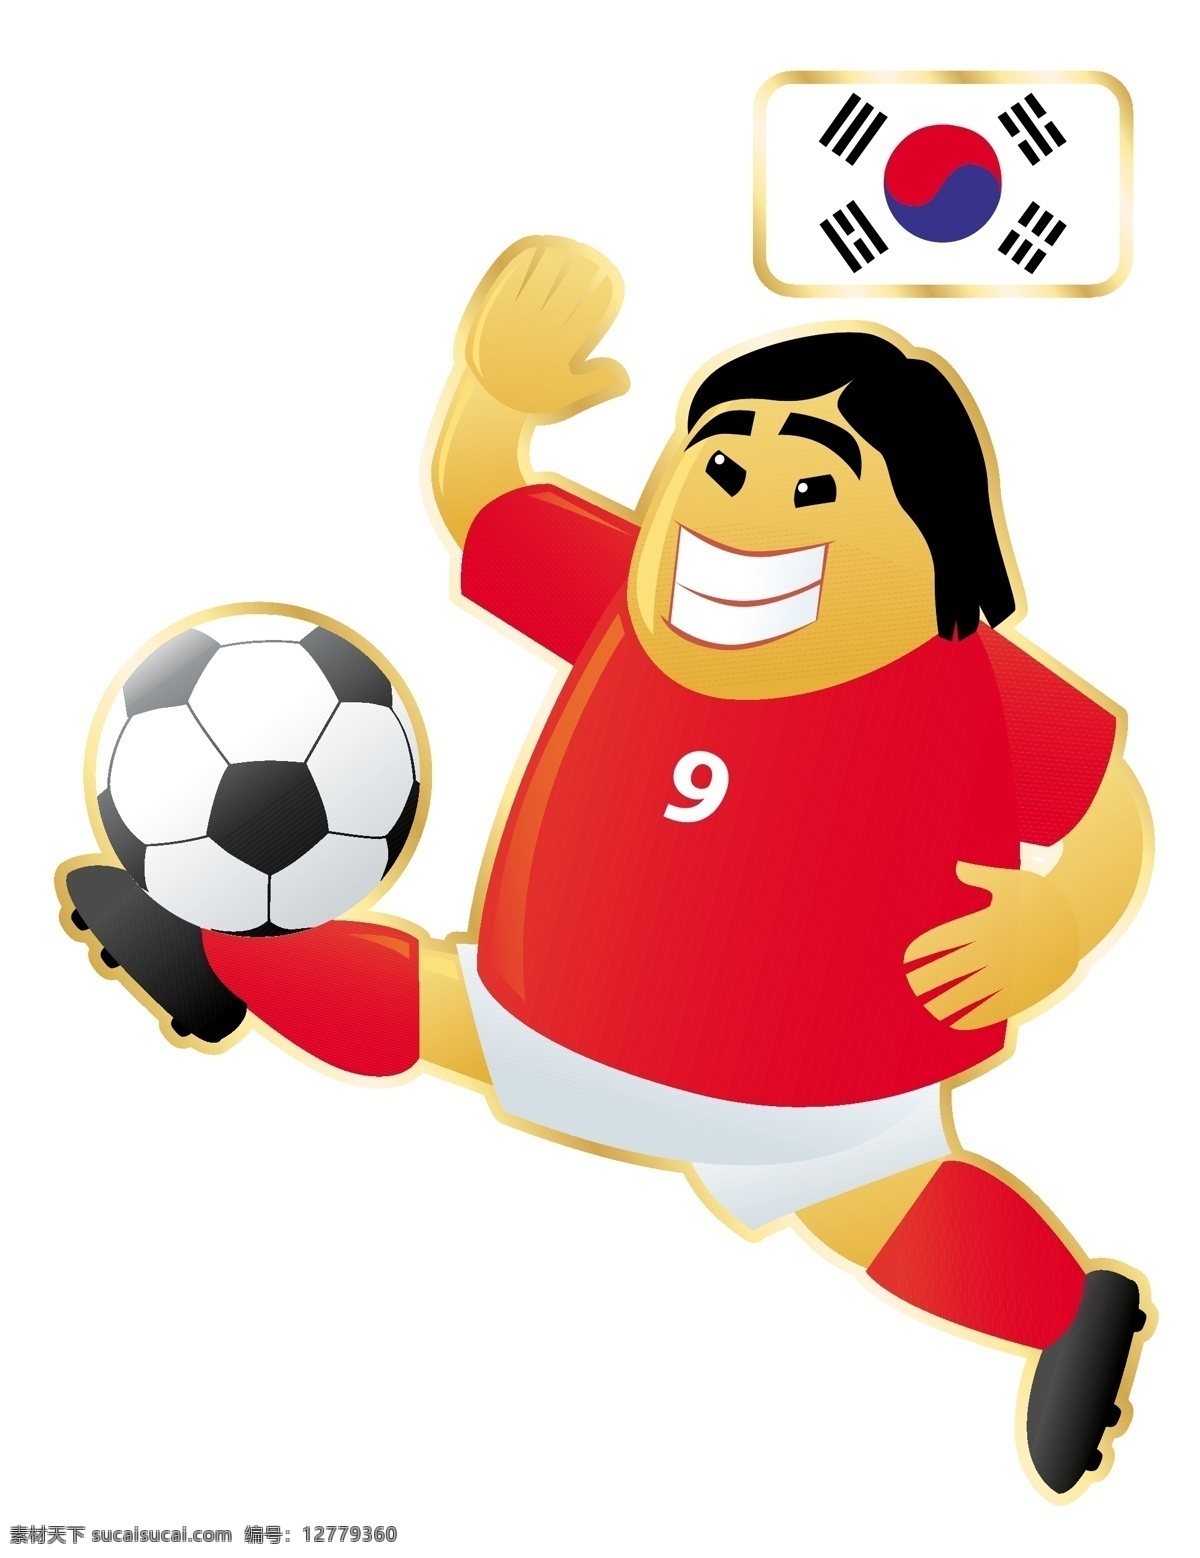 韩国 足球 卡通 人物 形象 矢量图 红色 9号 运动员 大胖子 运动 踢球 外国 矢量 扁平化 平面